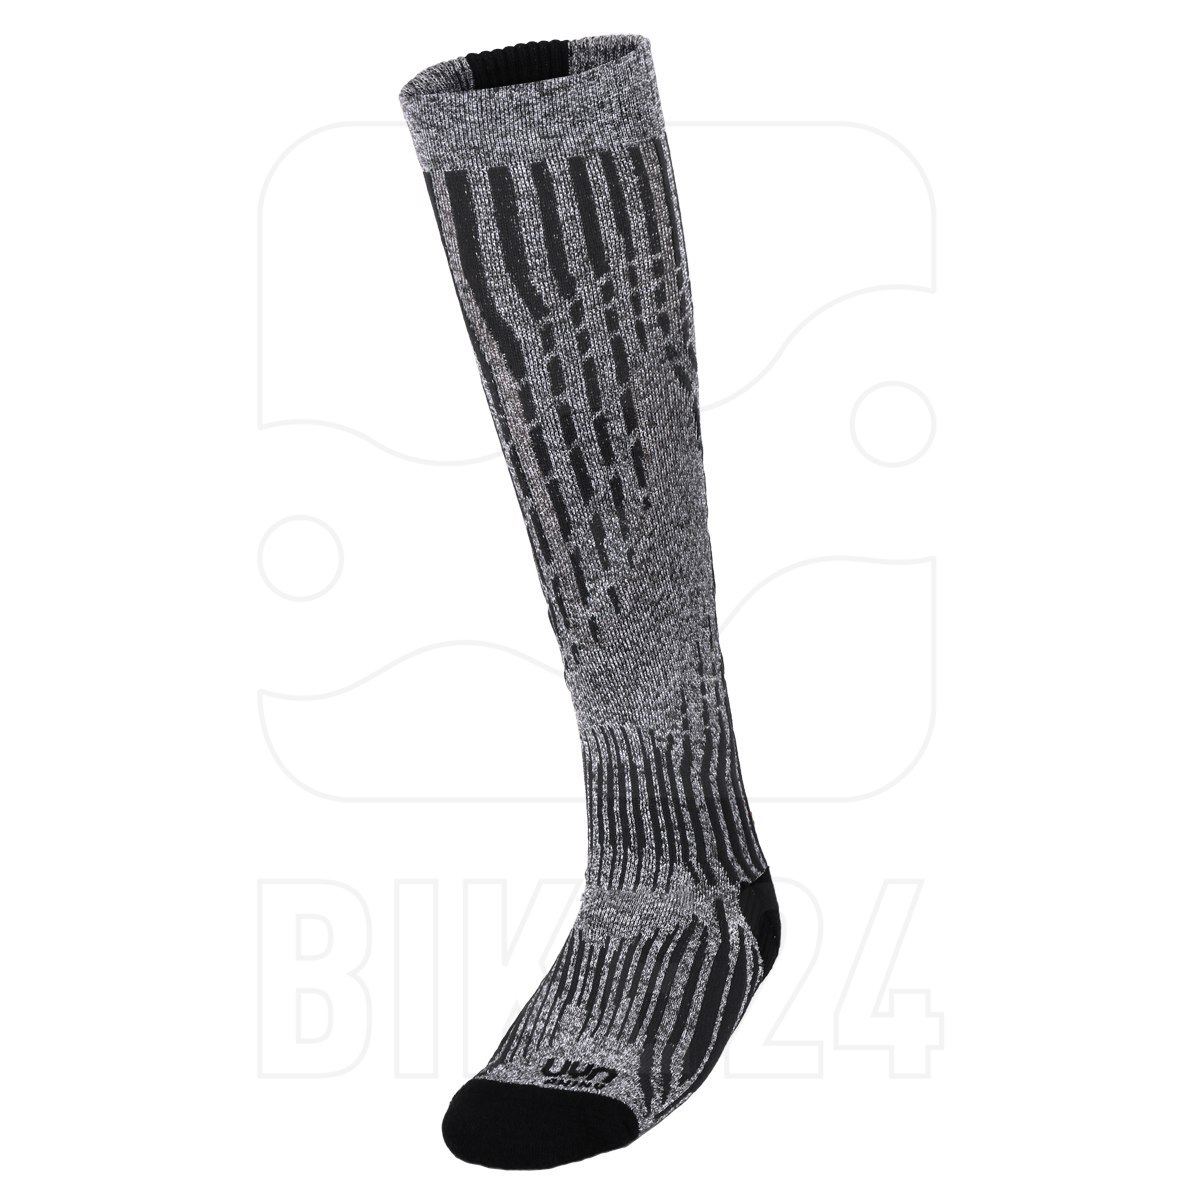 Produktbild von UYN Ski Cashmere Shiny Socks Damen - celebrity silver